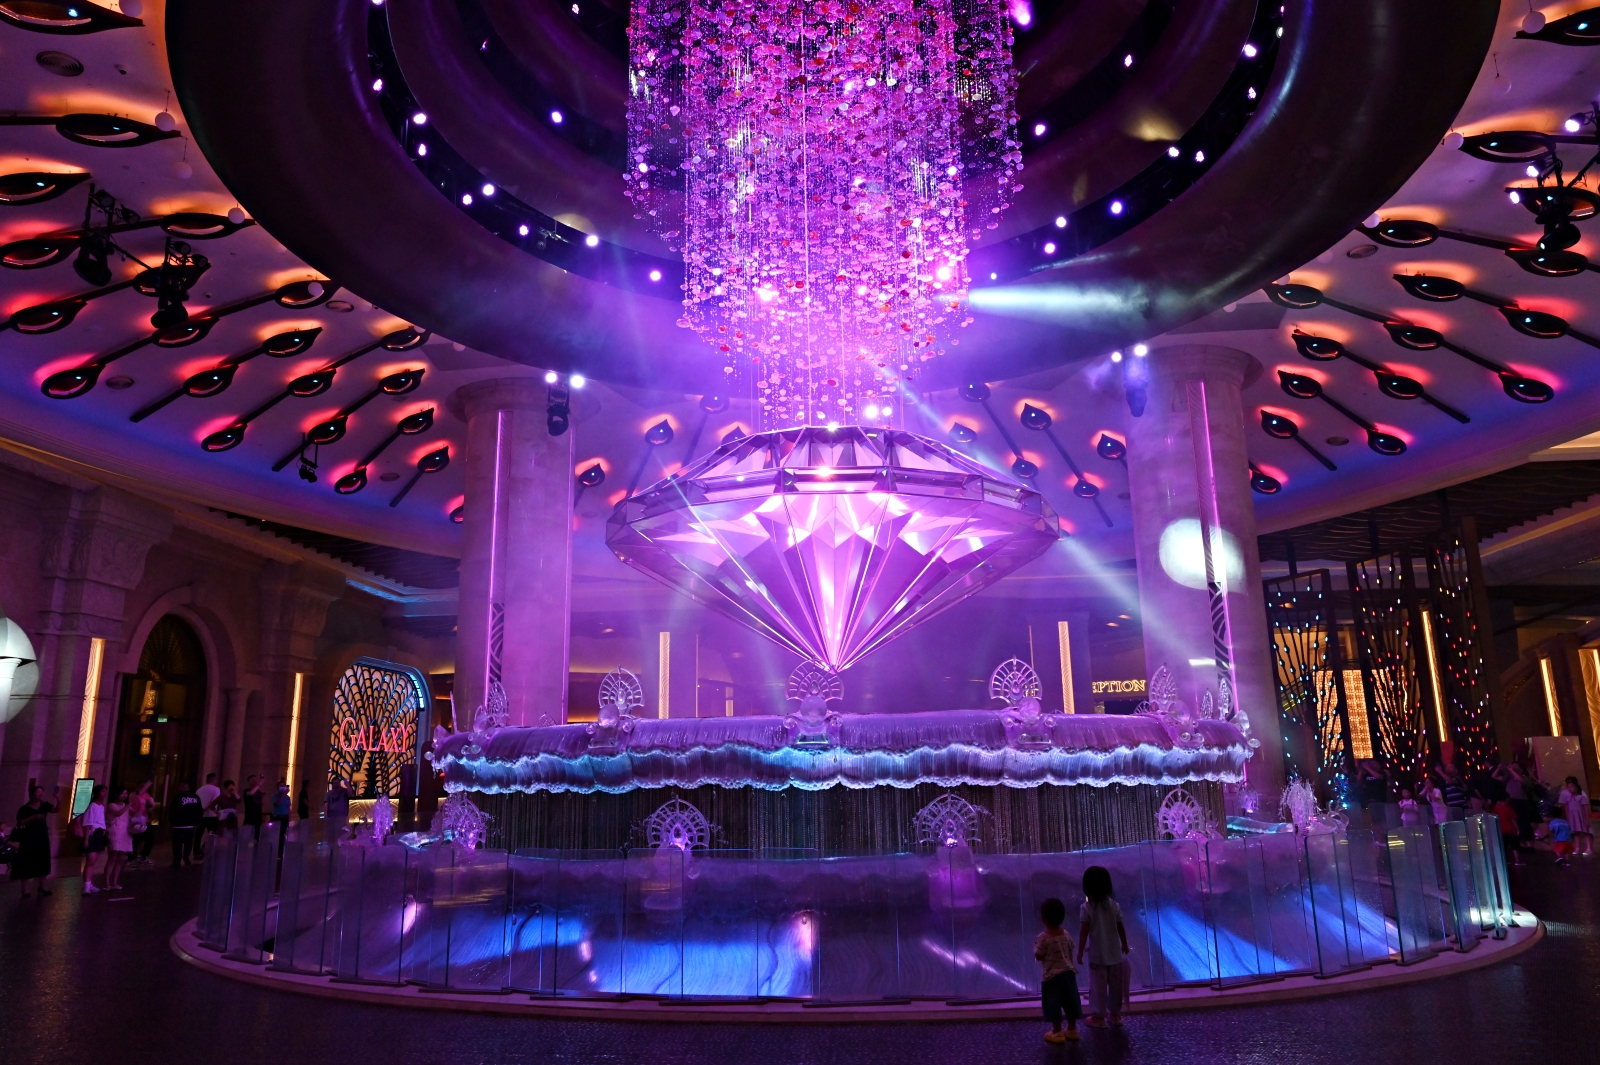 澳門住宿：五星級澳門銀河酒店Galaxy Macau，房間開箱、各設施介紹、天浪淘園及鑽石秀